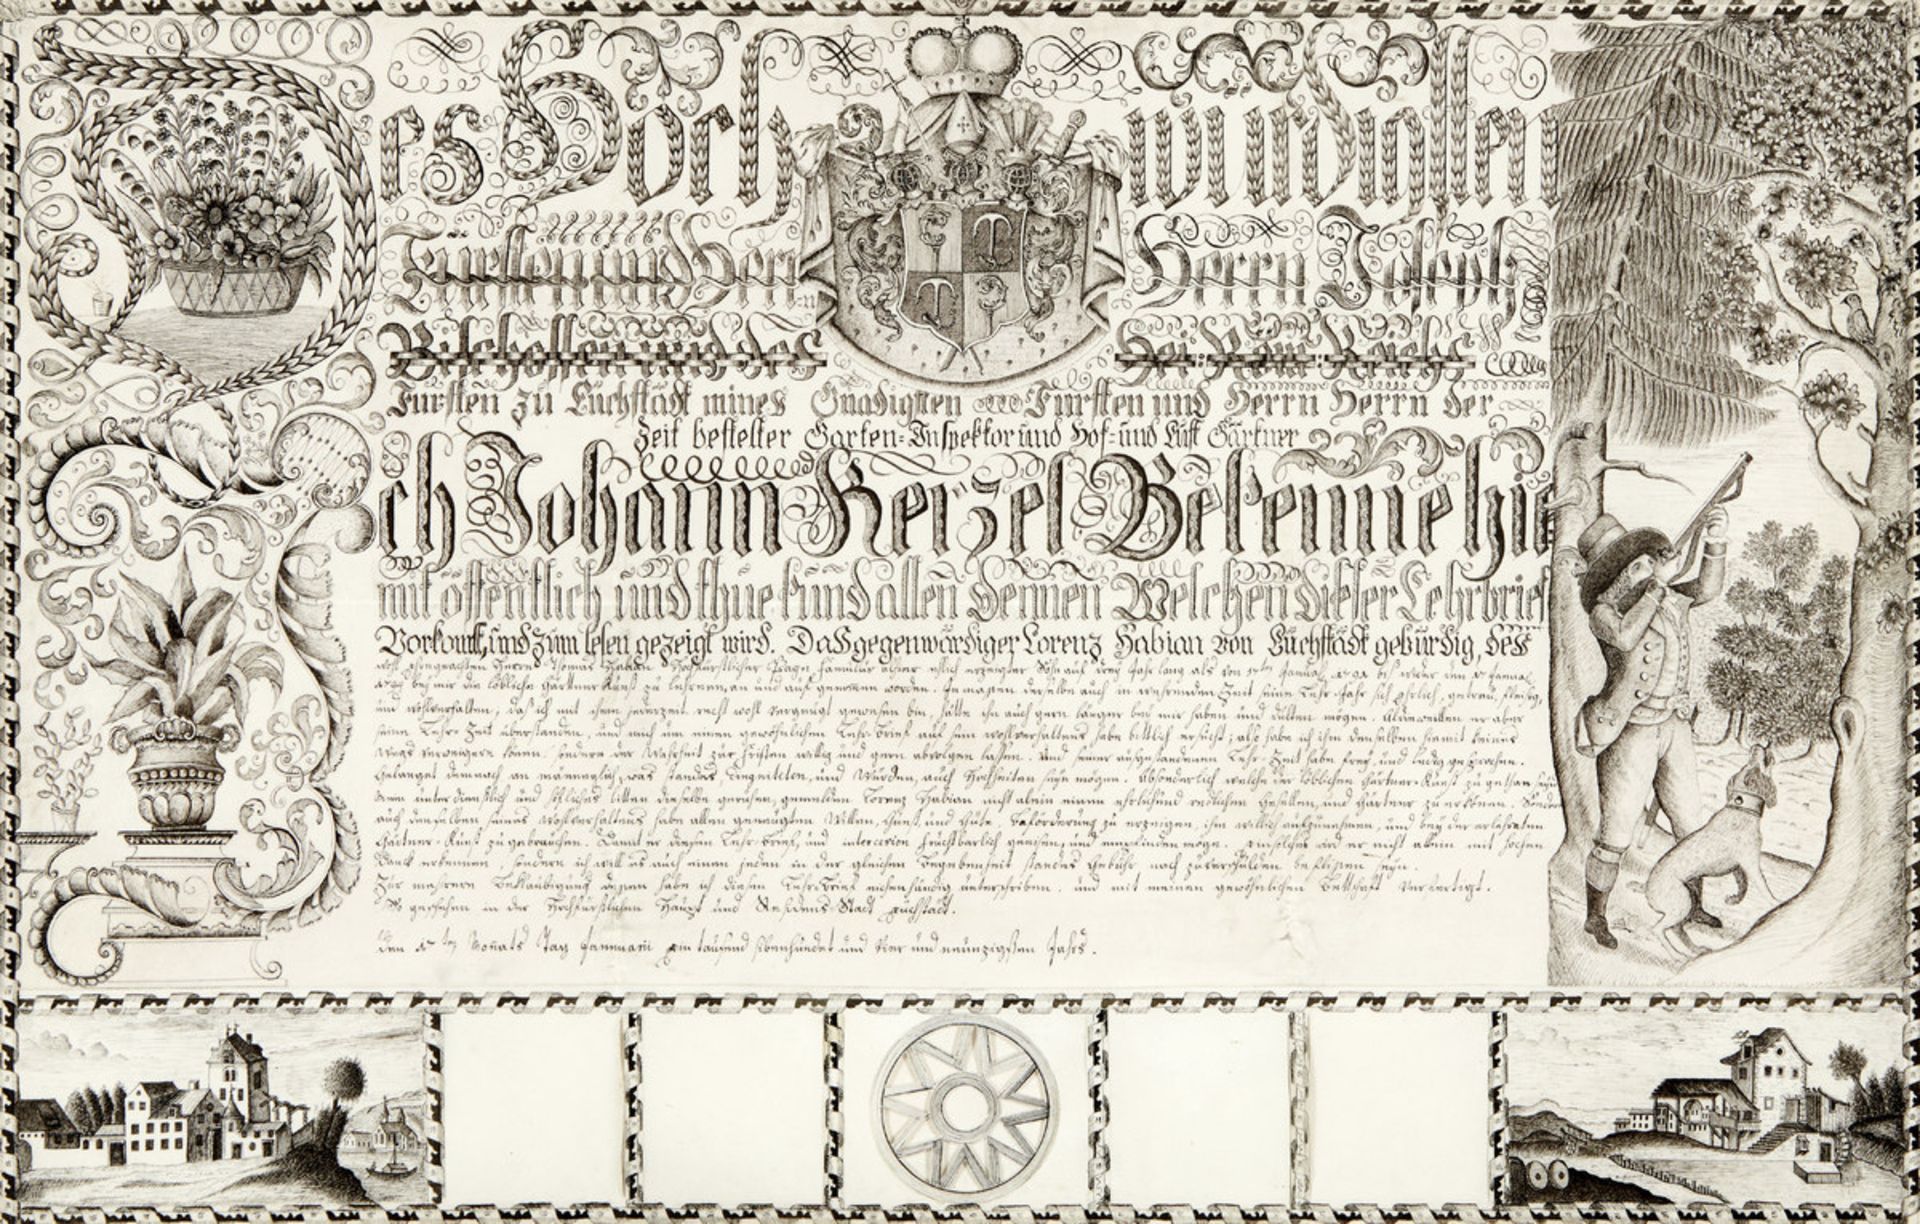 Kalligraphie-Lehrbrief "Gärtner"Deutschland, datiert 1794. Reich kalligraphierter Lehrbrief.